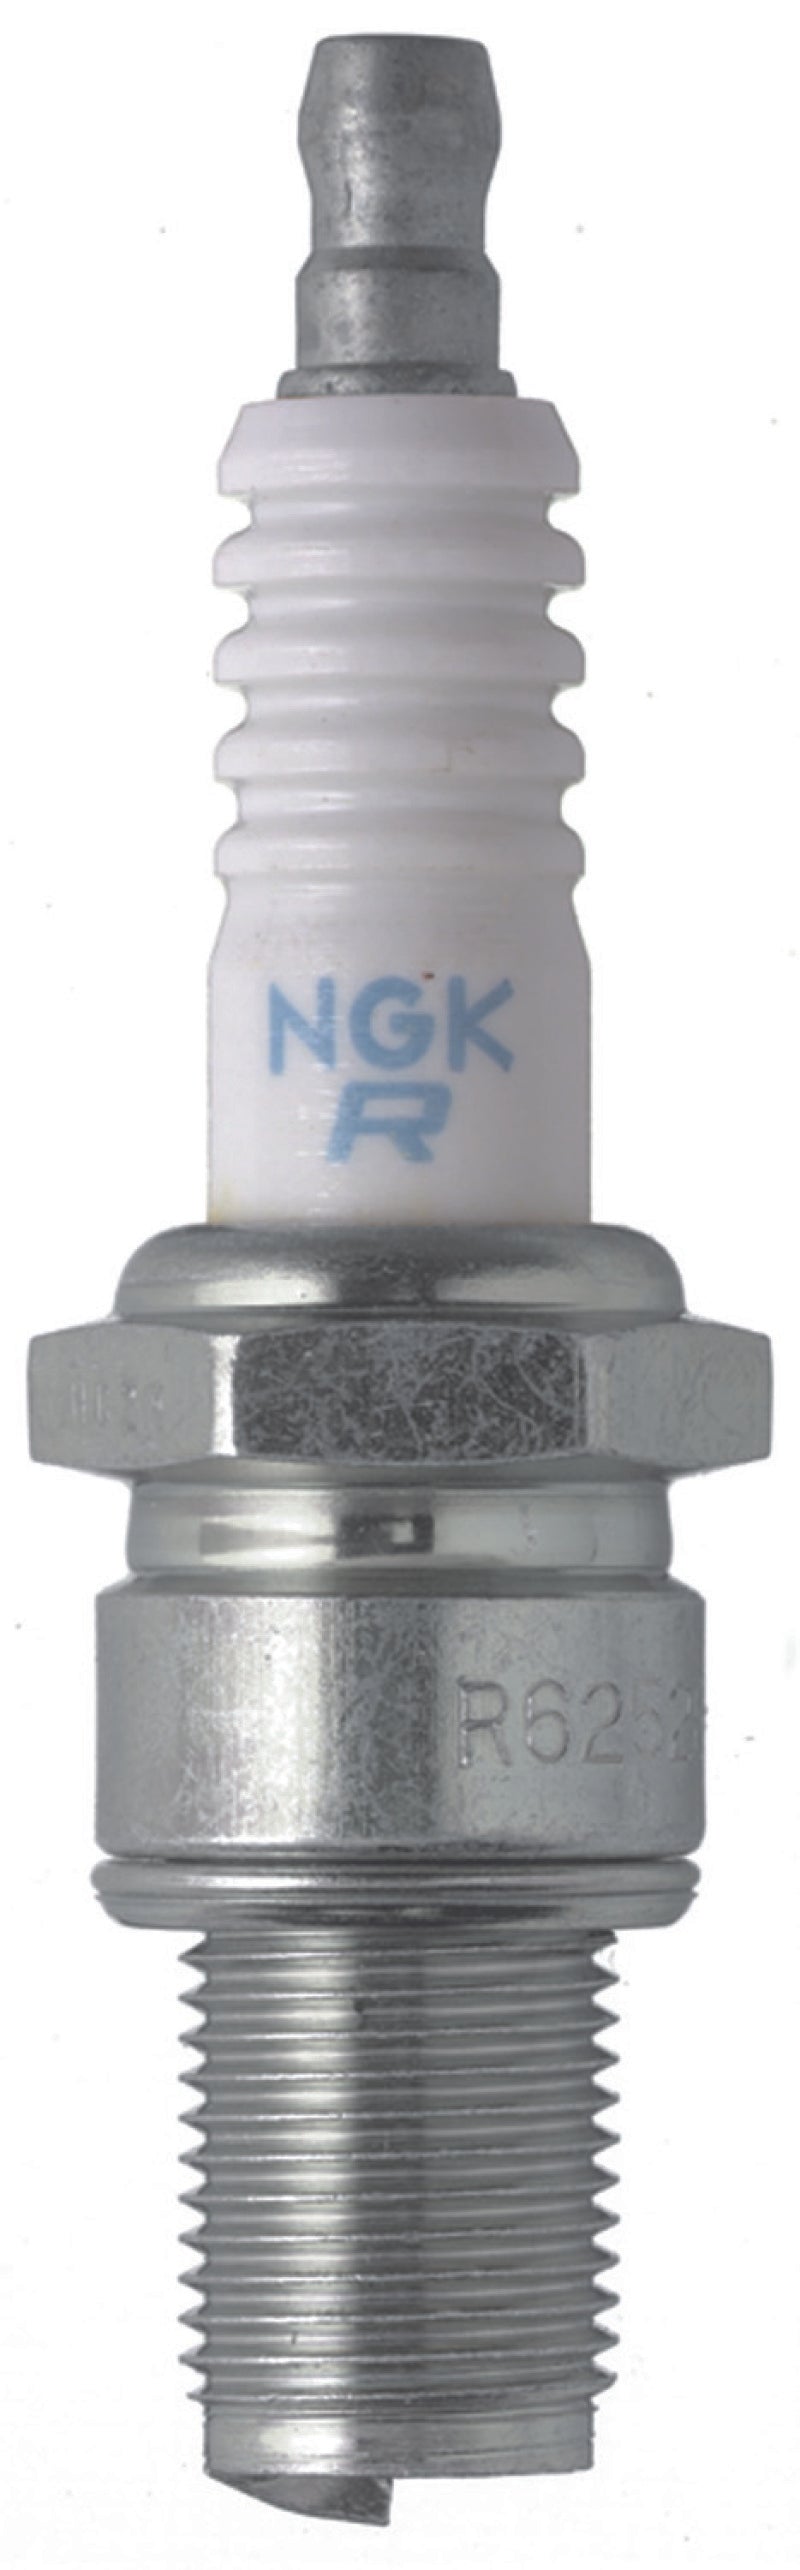 NGK Racing Spark Plug Box of 4 (R6254K-105)